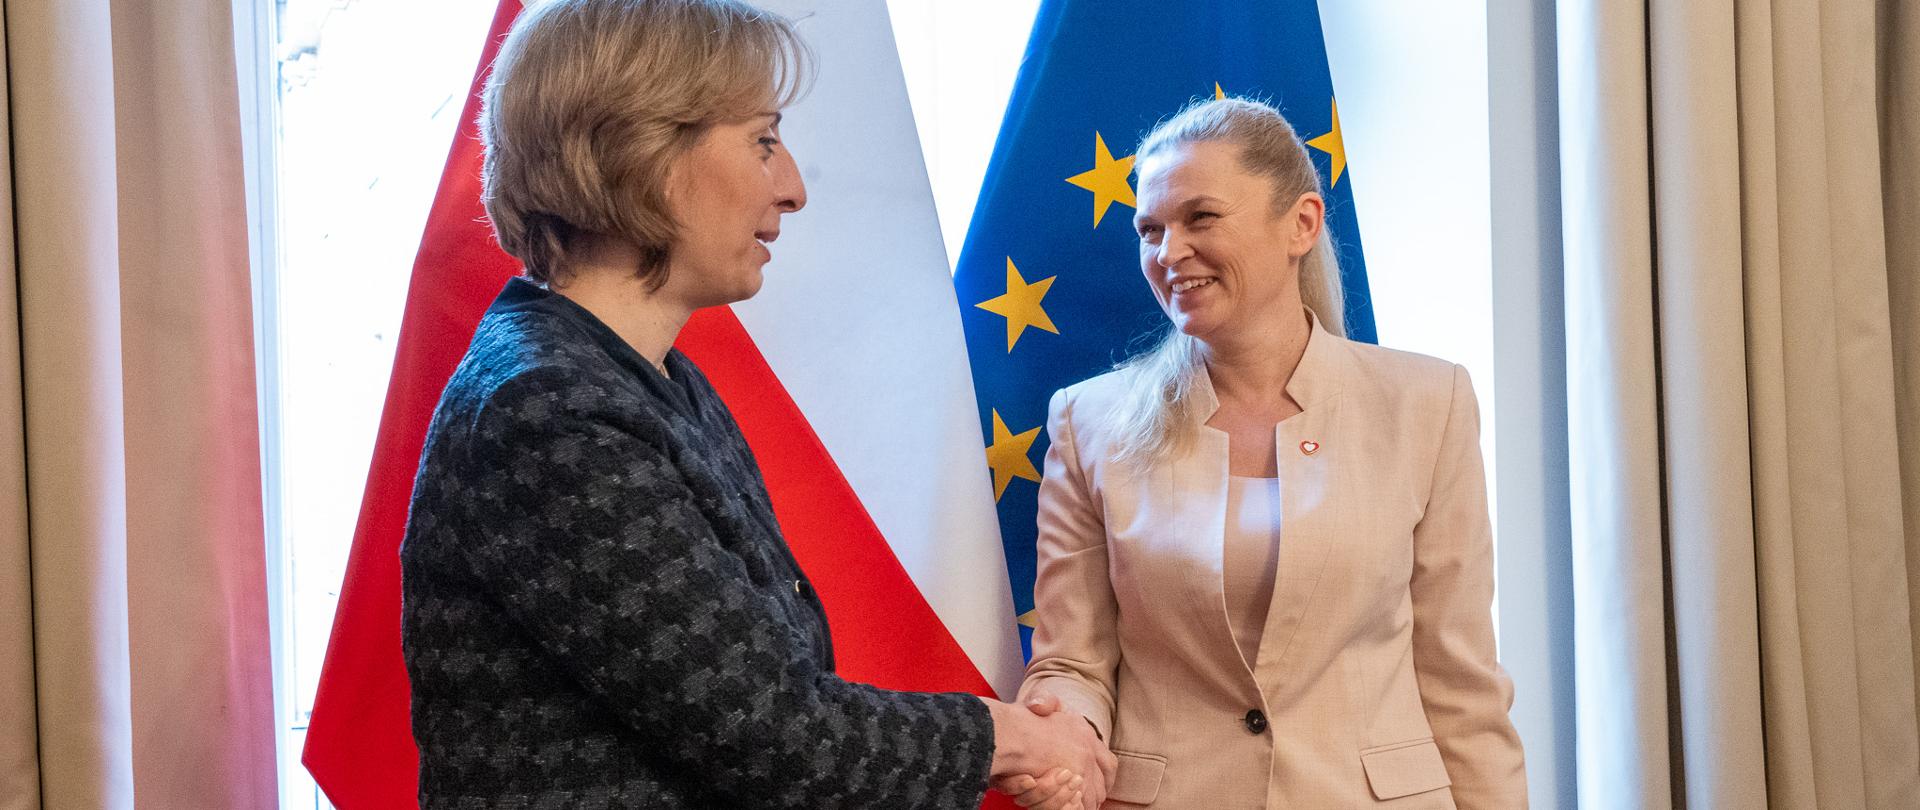 Minister Barbara Nowacka podaje rękę kobiecie w ciemnej garsonce. W tle flagi Polski i UE